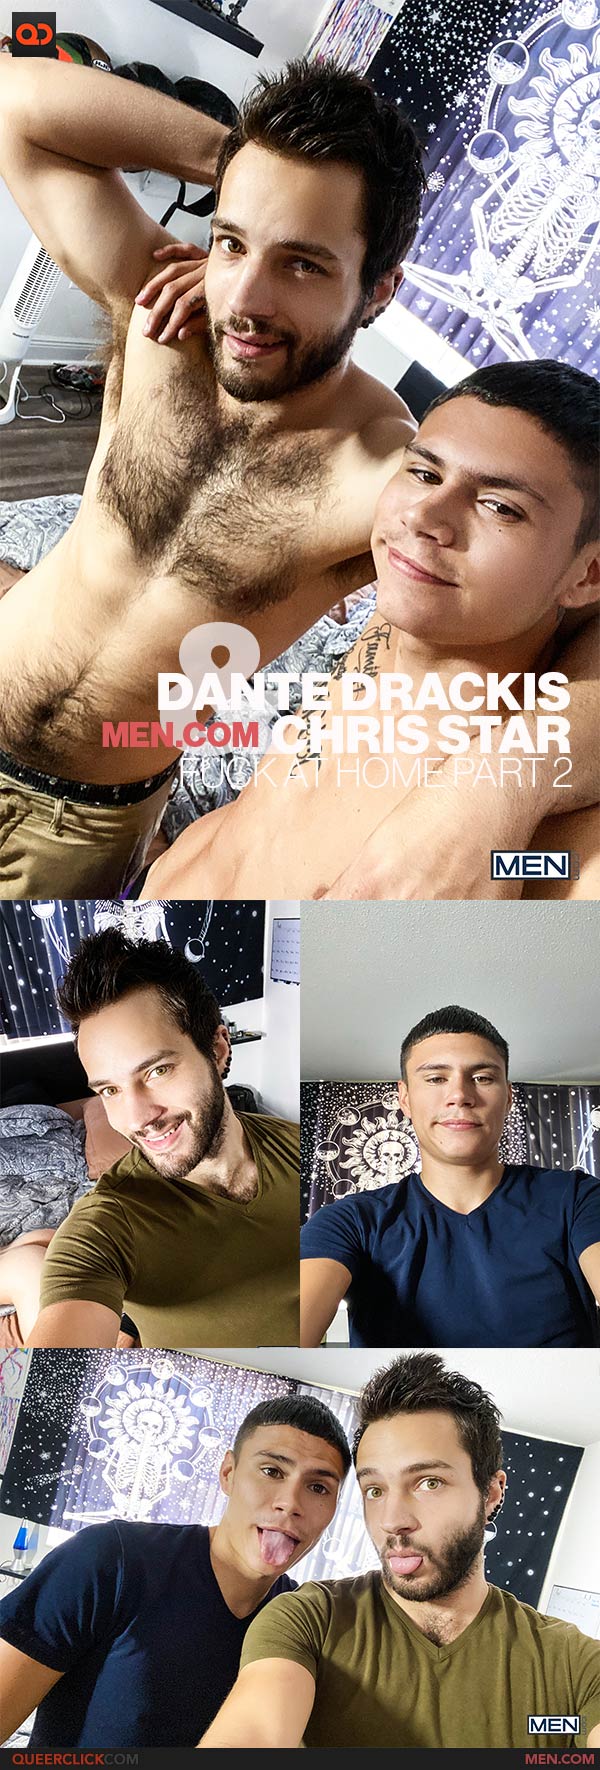 Men.com: Dante Drackis and Chris Star